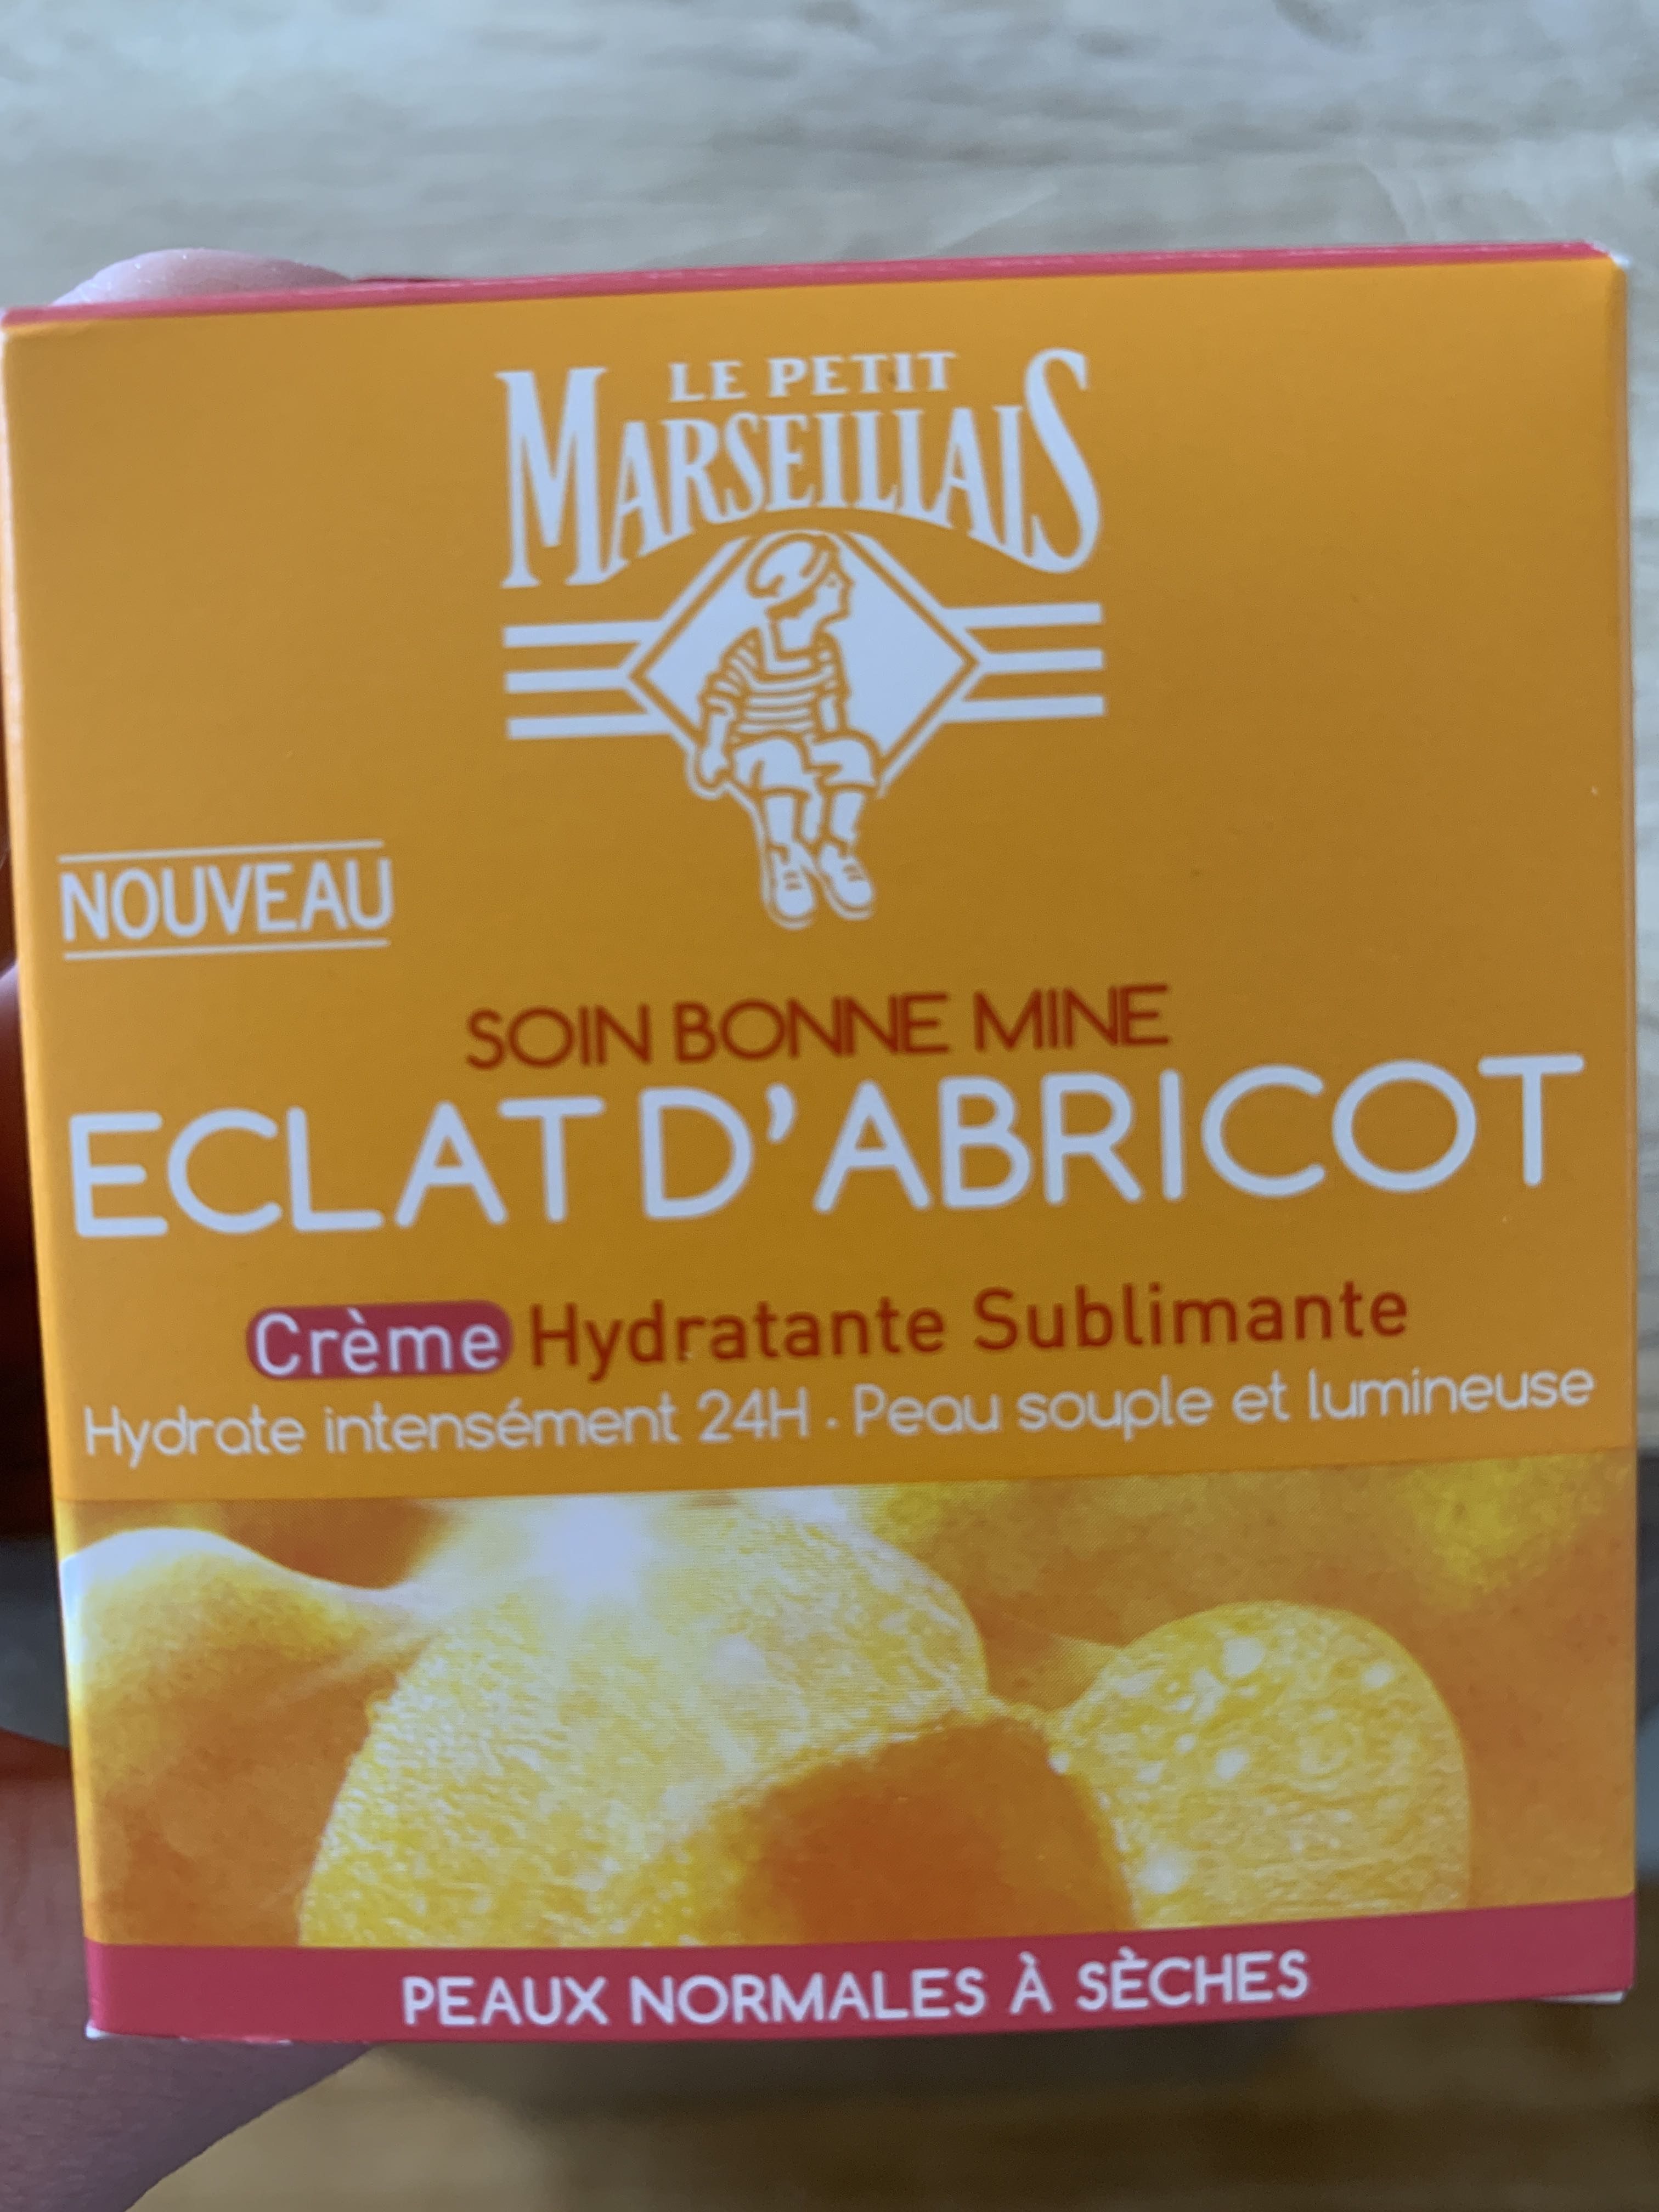 Soin bonne mine éclat d’abricot crème hydratante - Produit - fr